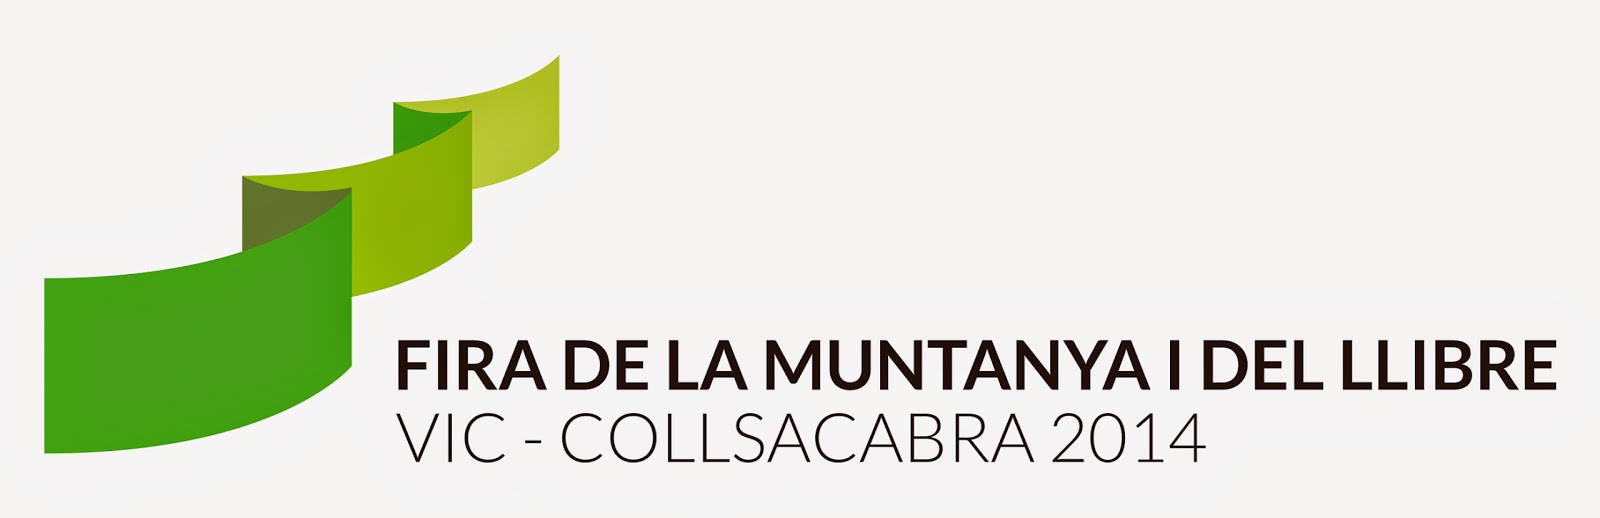 La Fira de la Muntanya i del Llibre Vic-Collsacabra 2014 comptarà amb més de 50 estands i 70 activitats